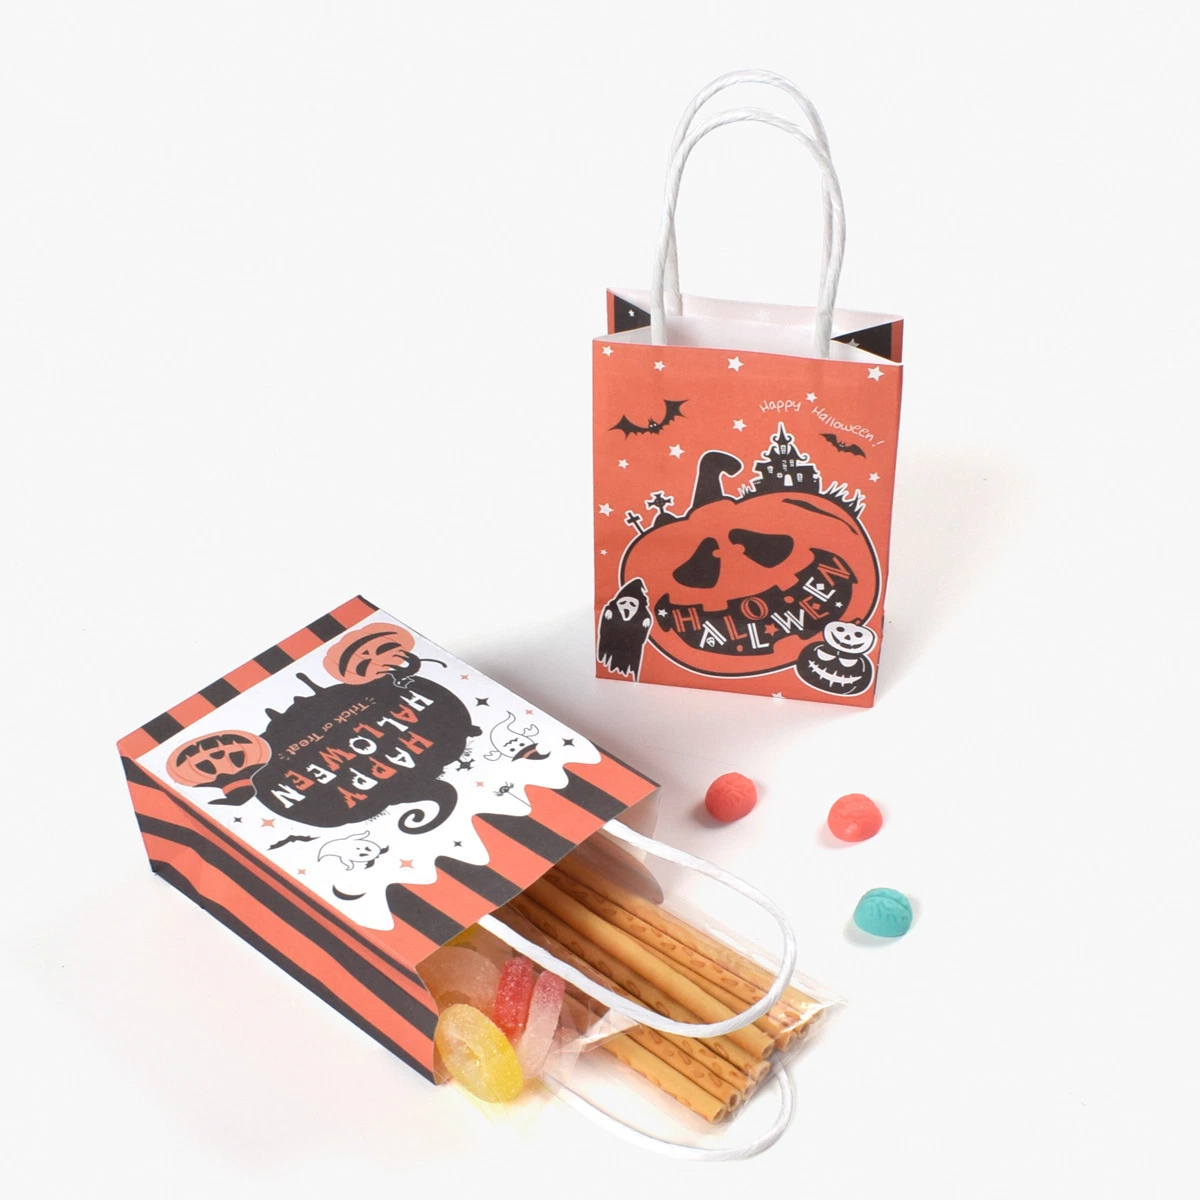 Спрос на переработку Customization магазины бутик бумажных мешков для пыли Хэллоуин игрушка упаковка конфеты подарок бумажных мешков для пыли